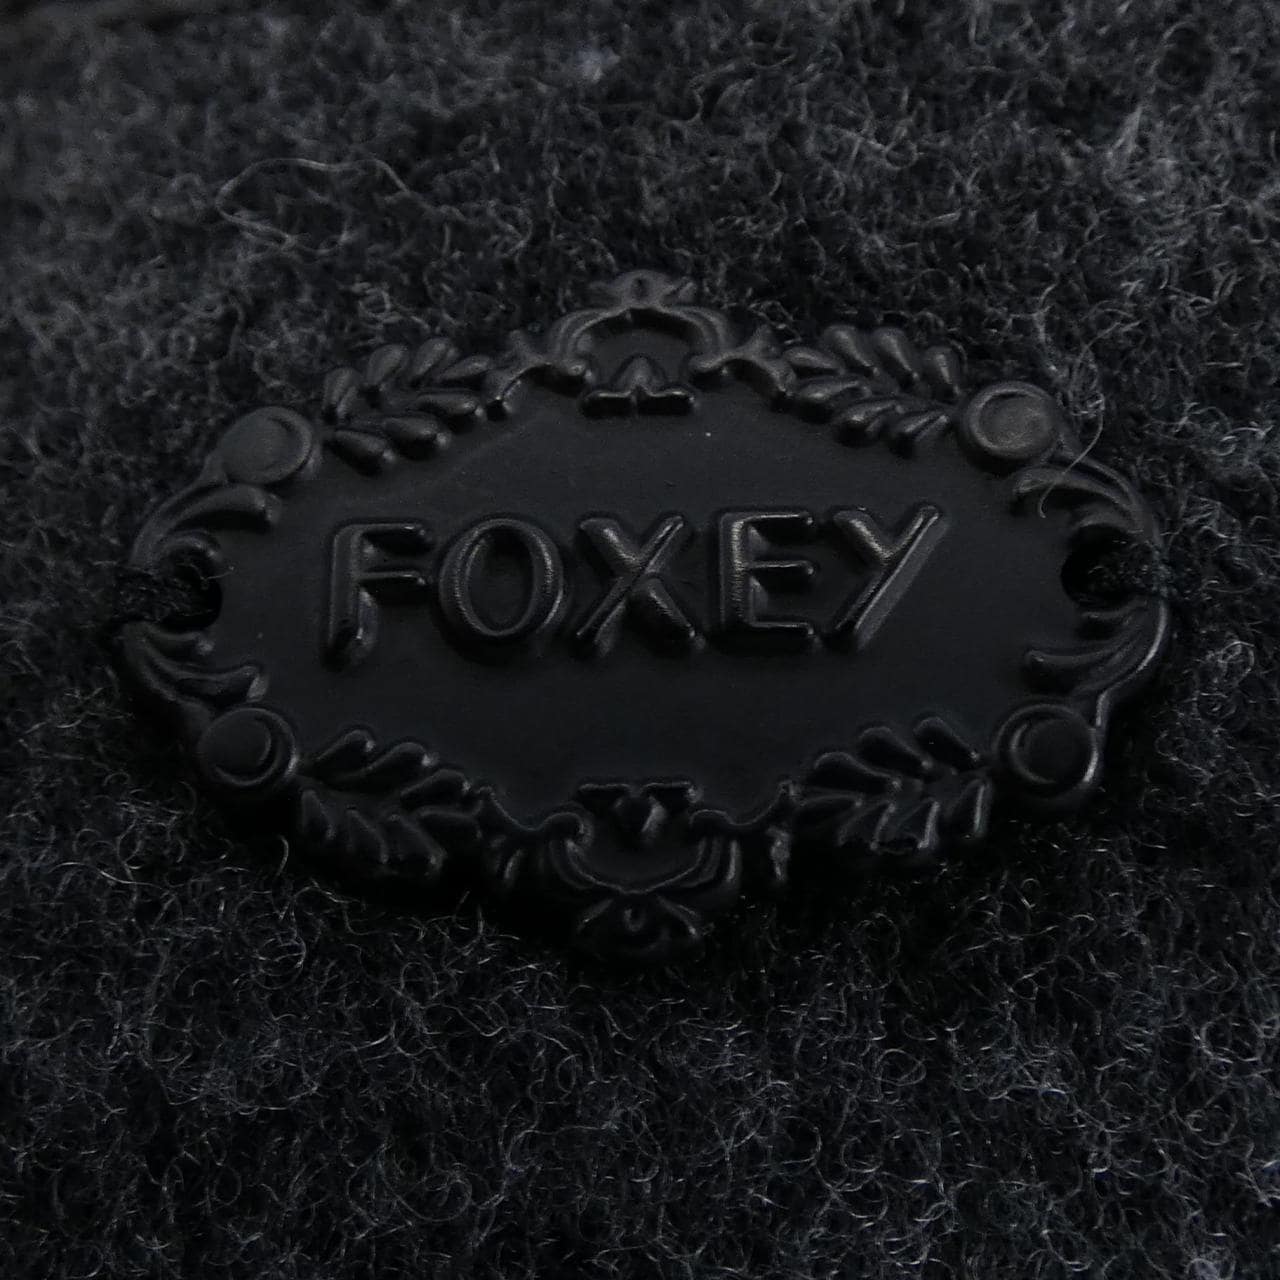 Foxy FOXEY coat